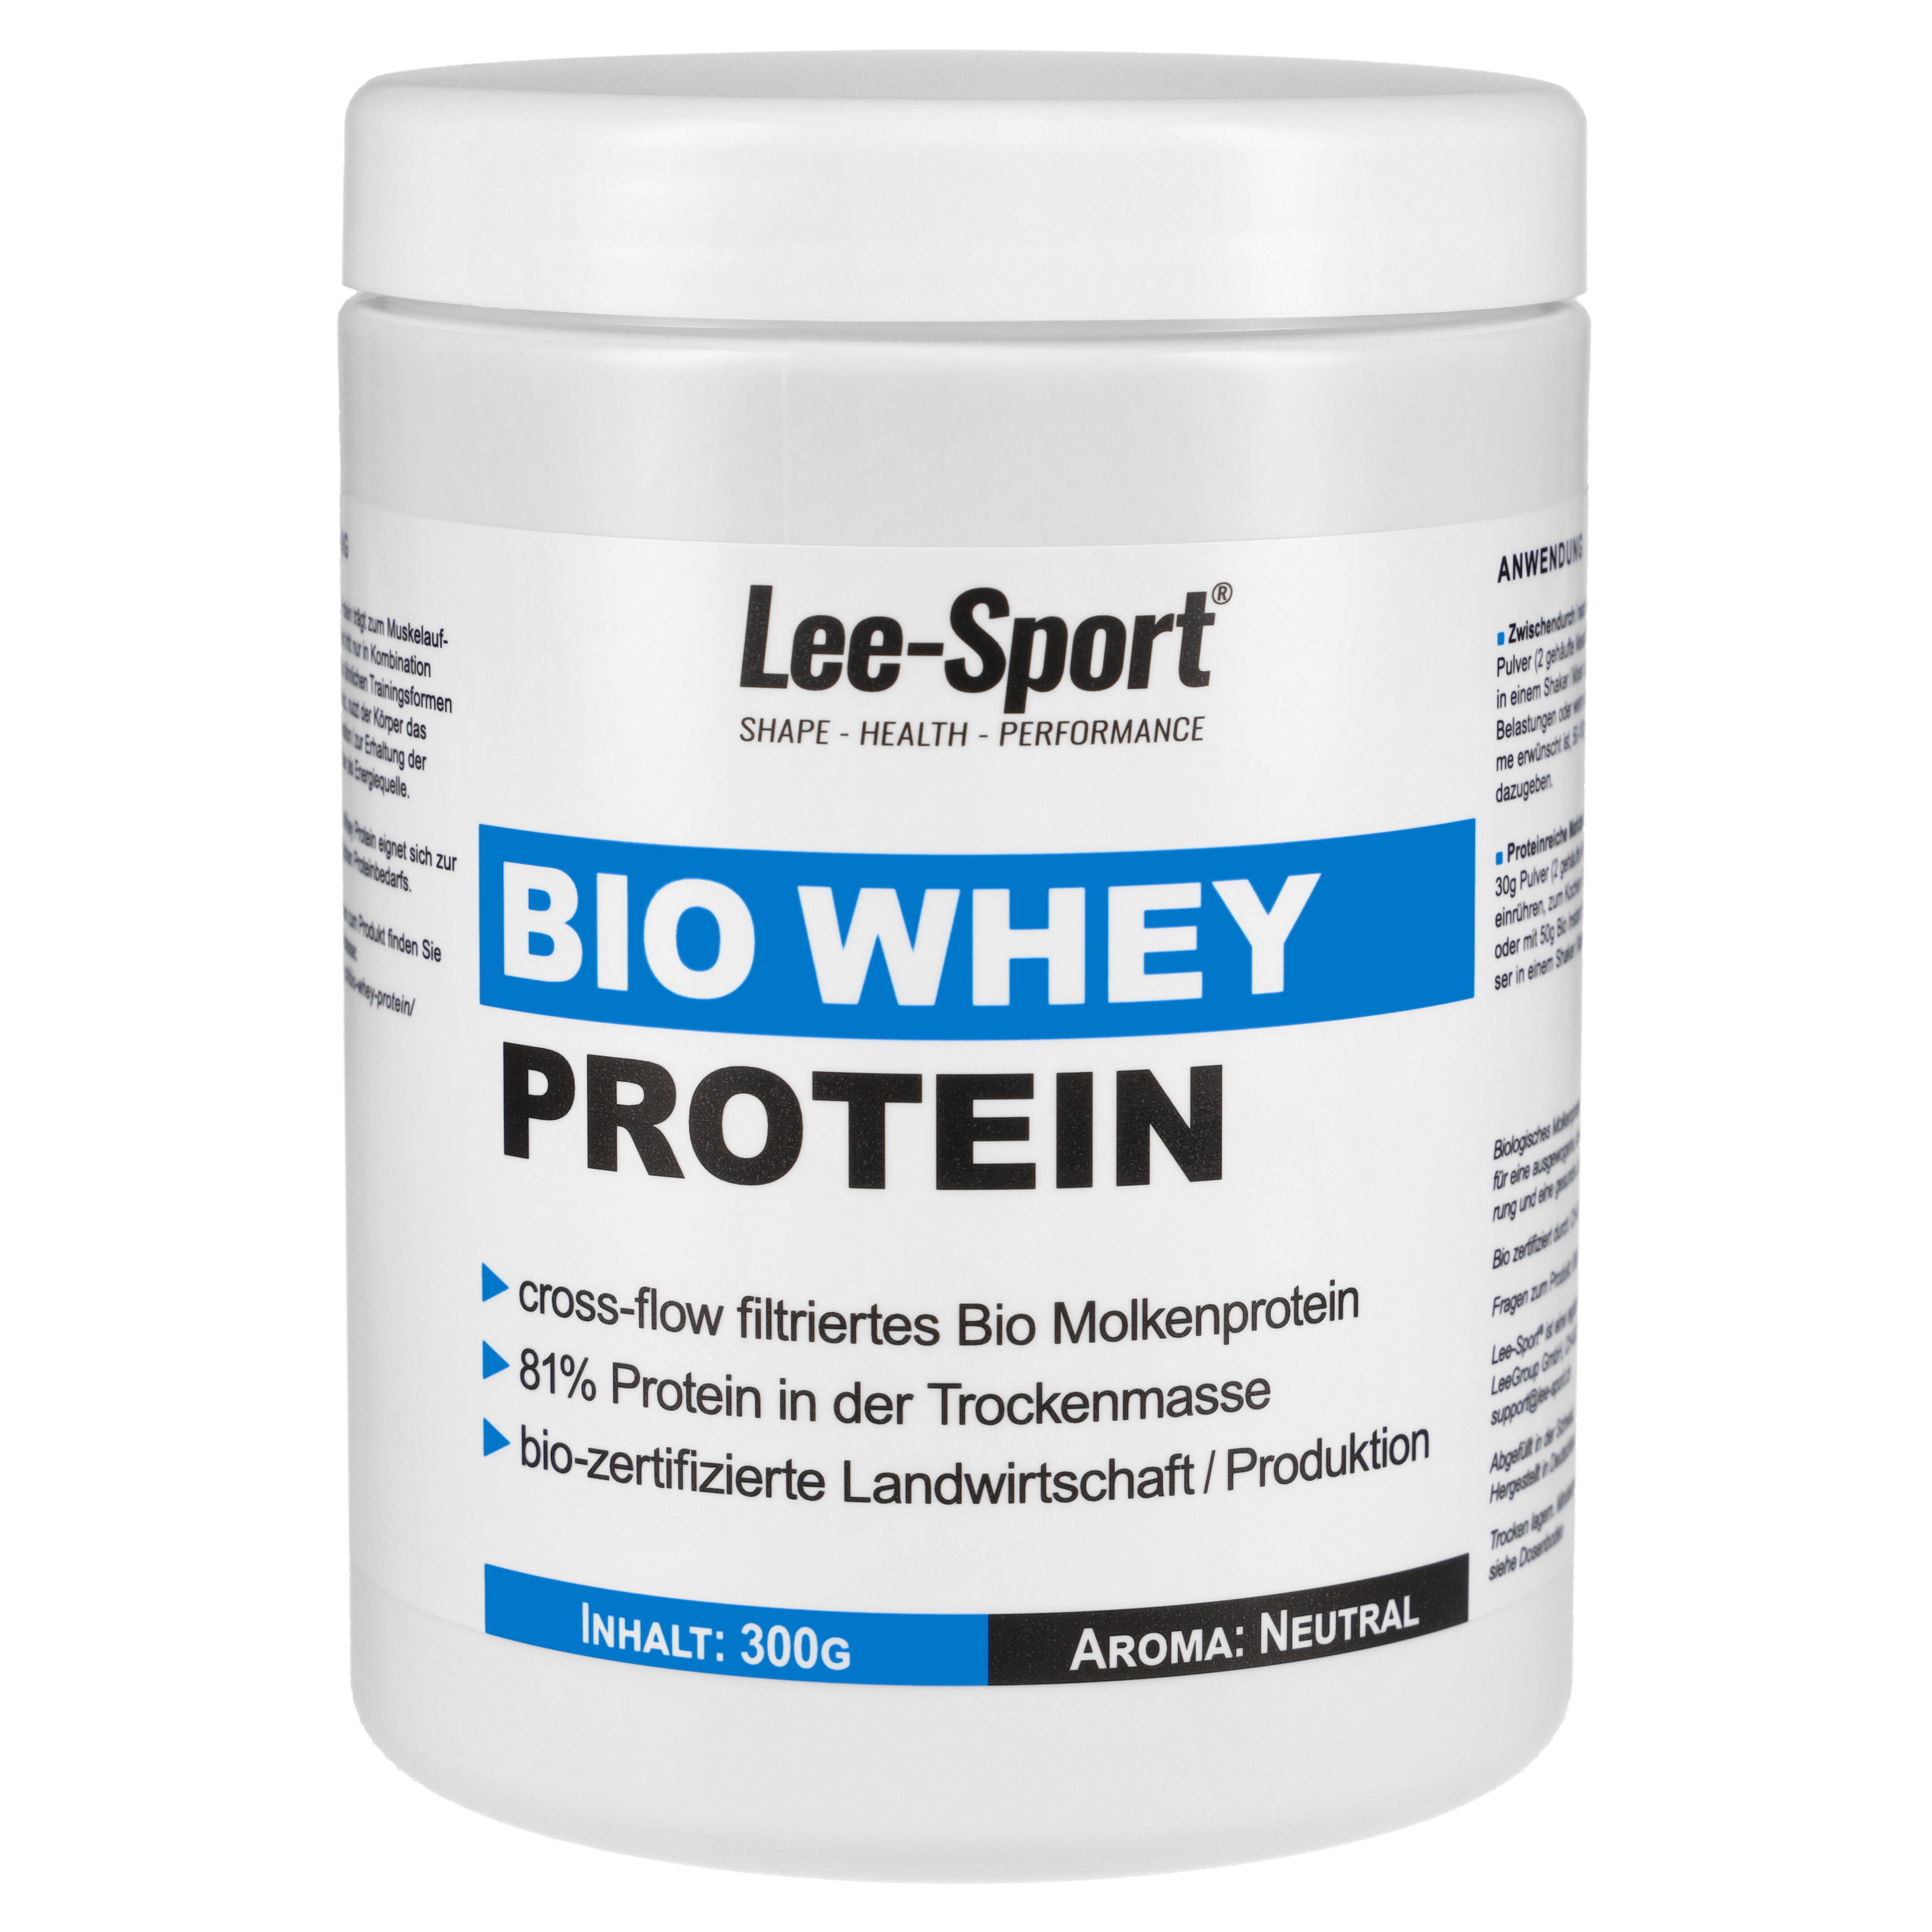 Bio Whey Protein günstig kaufen | Lee-Sport®